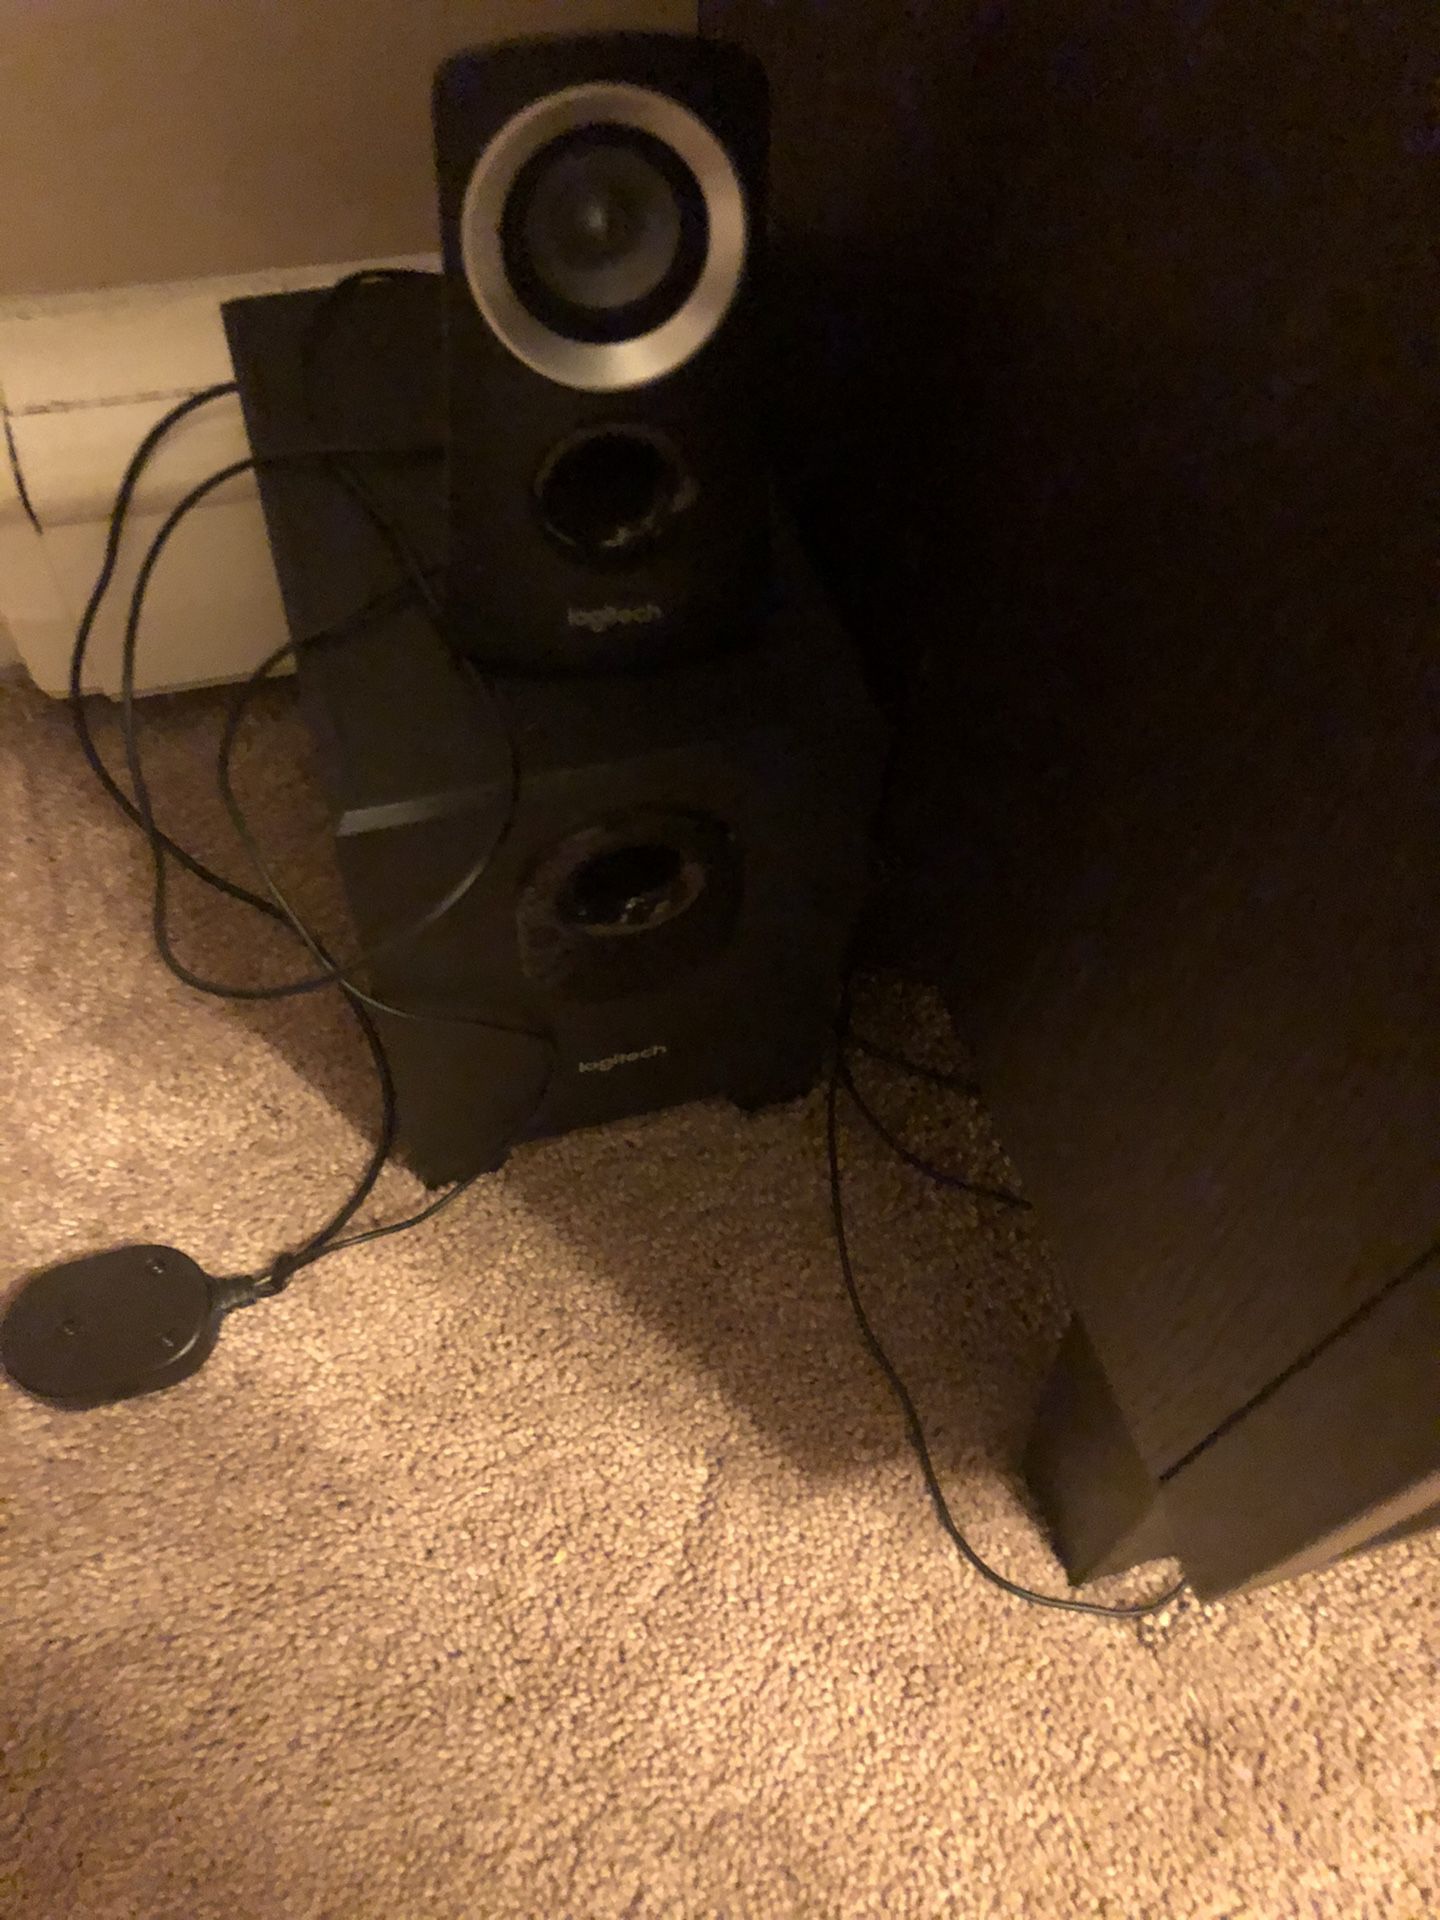 Computer speakers